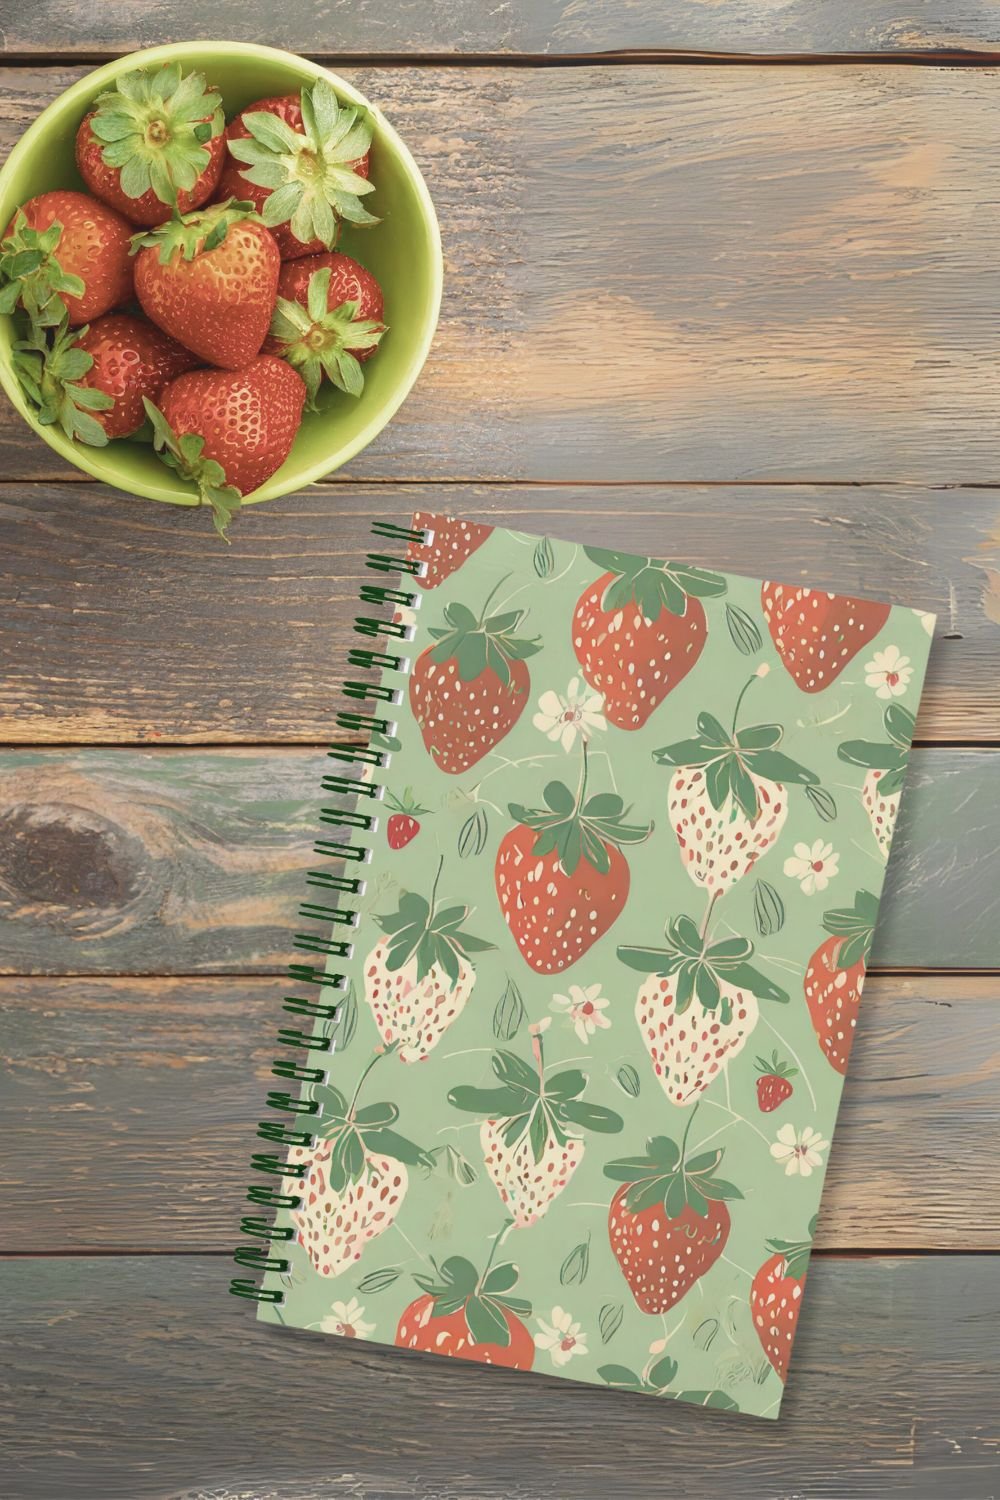 Strawberry Nostaglia Journal